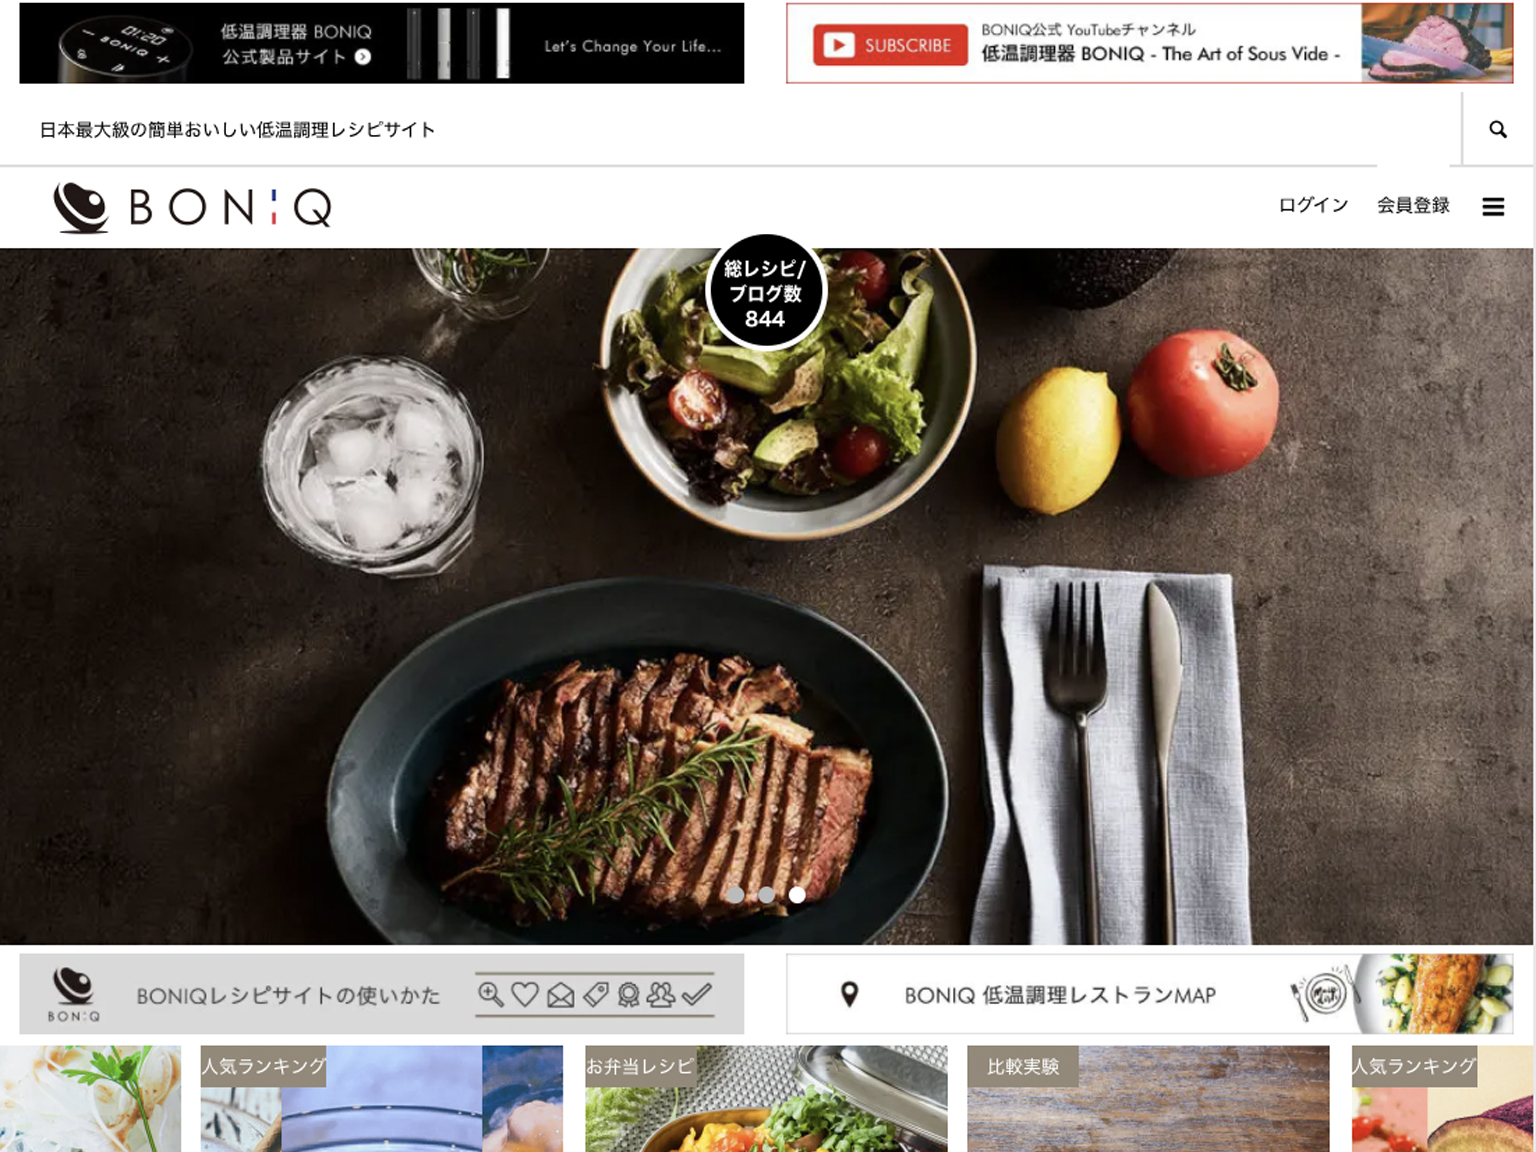 iF Design - BONIQ Official Sous Vide Cooking Recipe Website